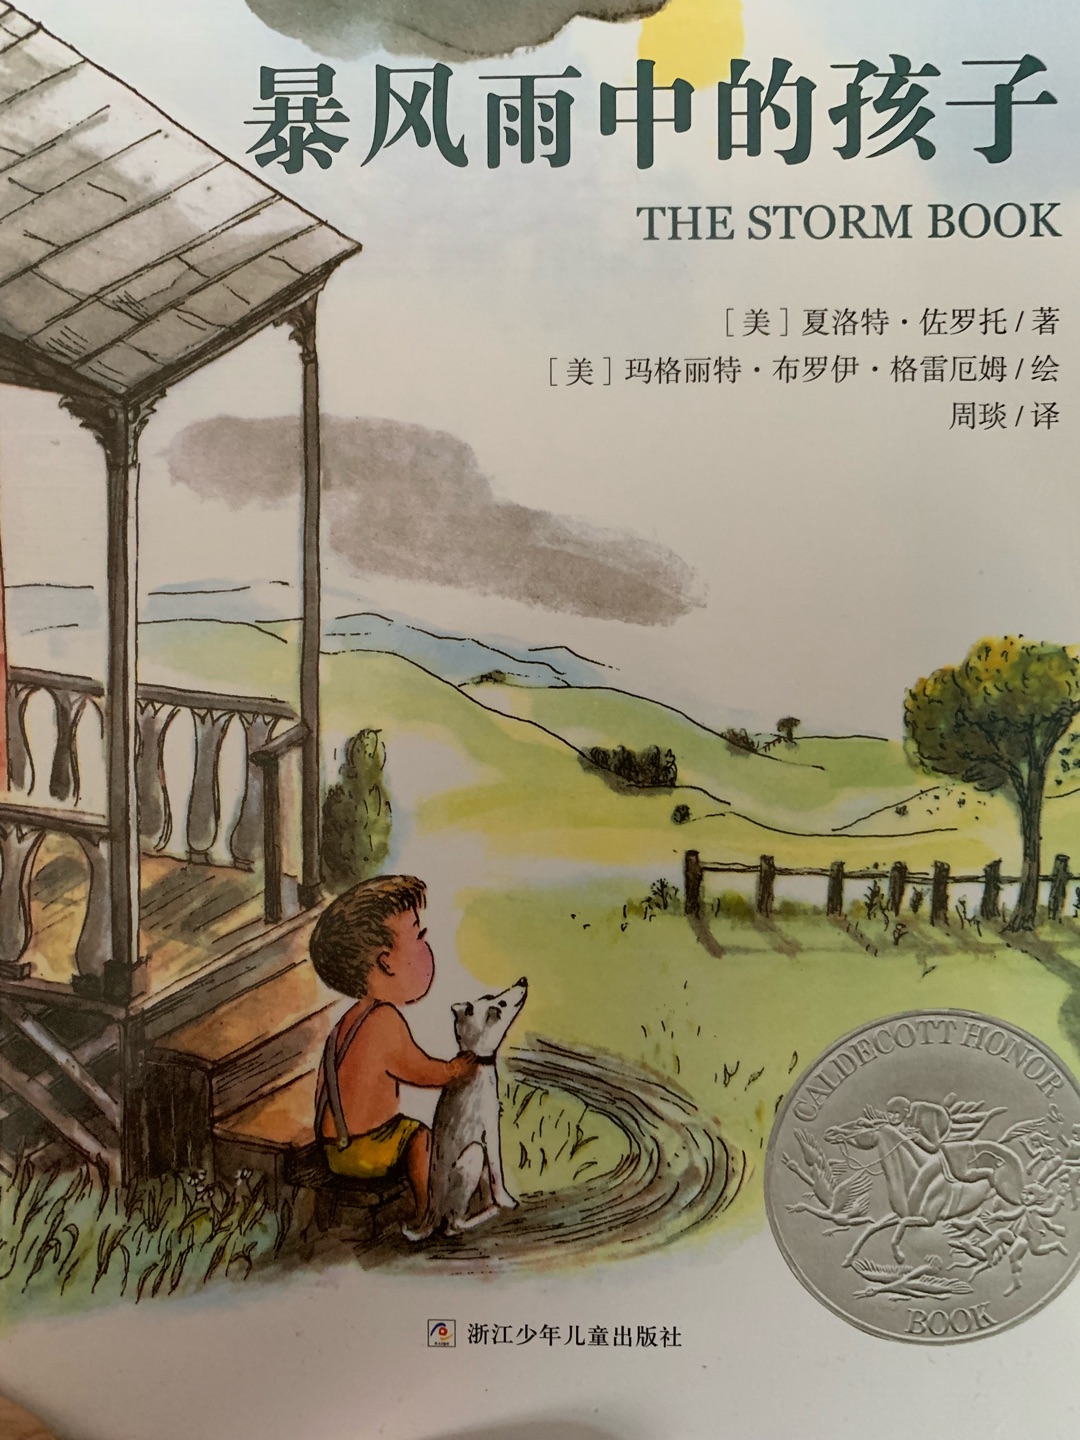 暴风雨中的孩子还没有看呢 但是书的质量不错